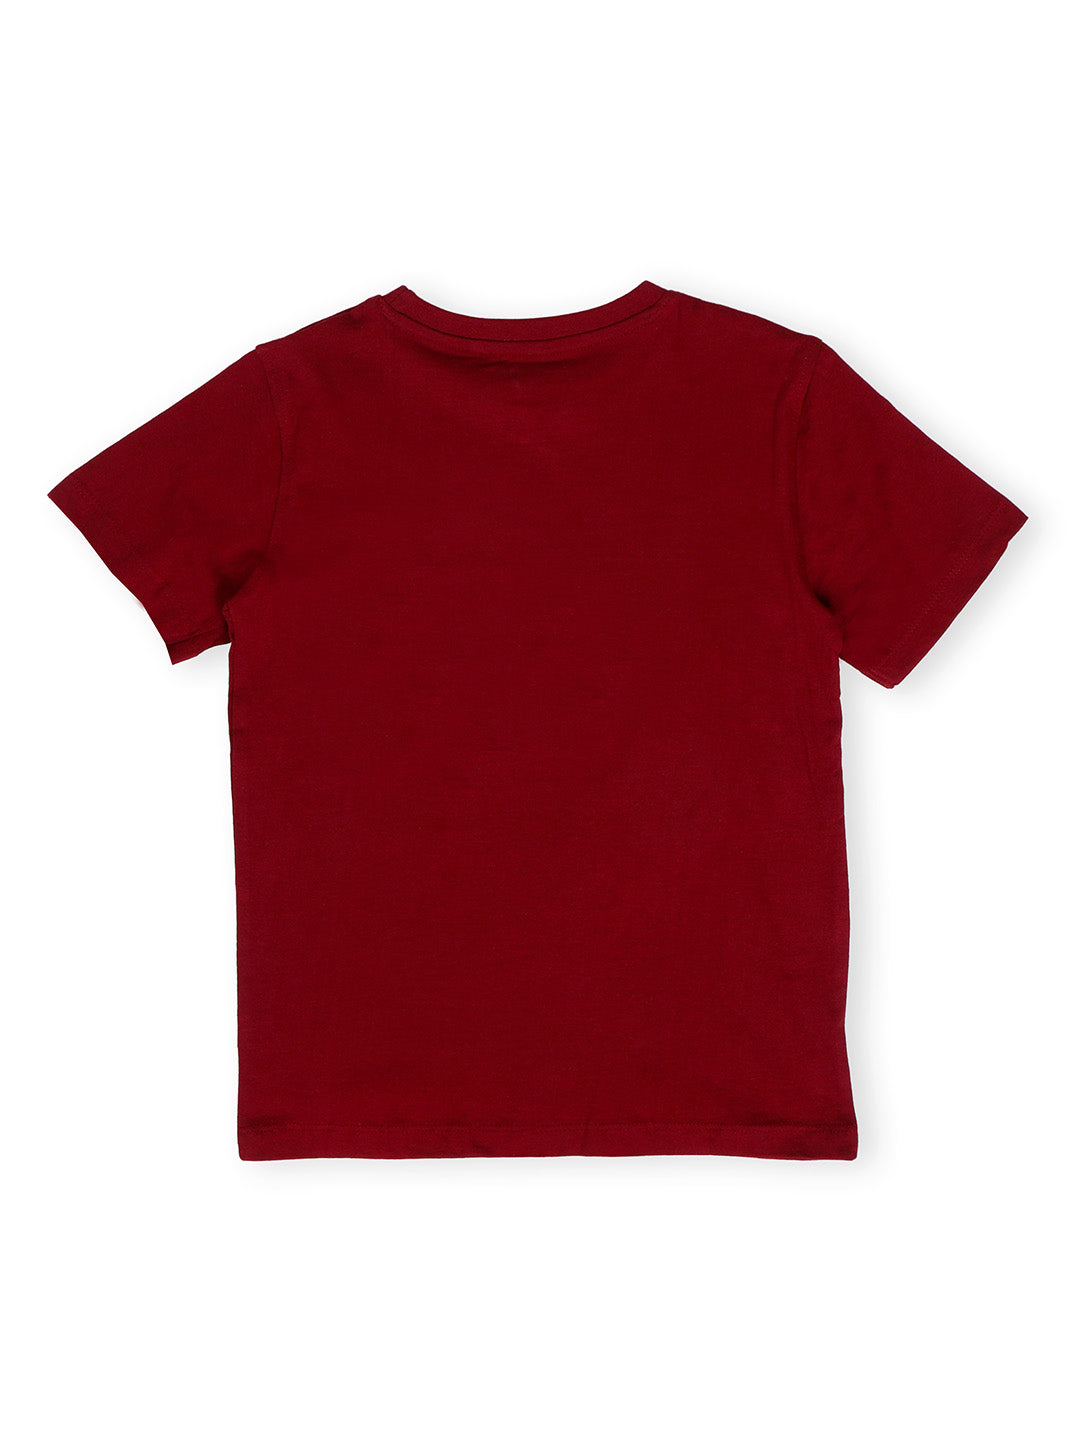 TWGE - Kids Tshirt for Boys - ISRO Space Theme - Printed Cotton Tees - Color Maroon